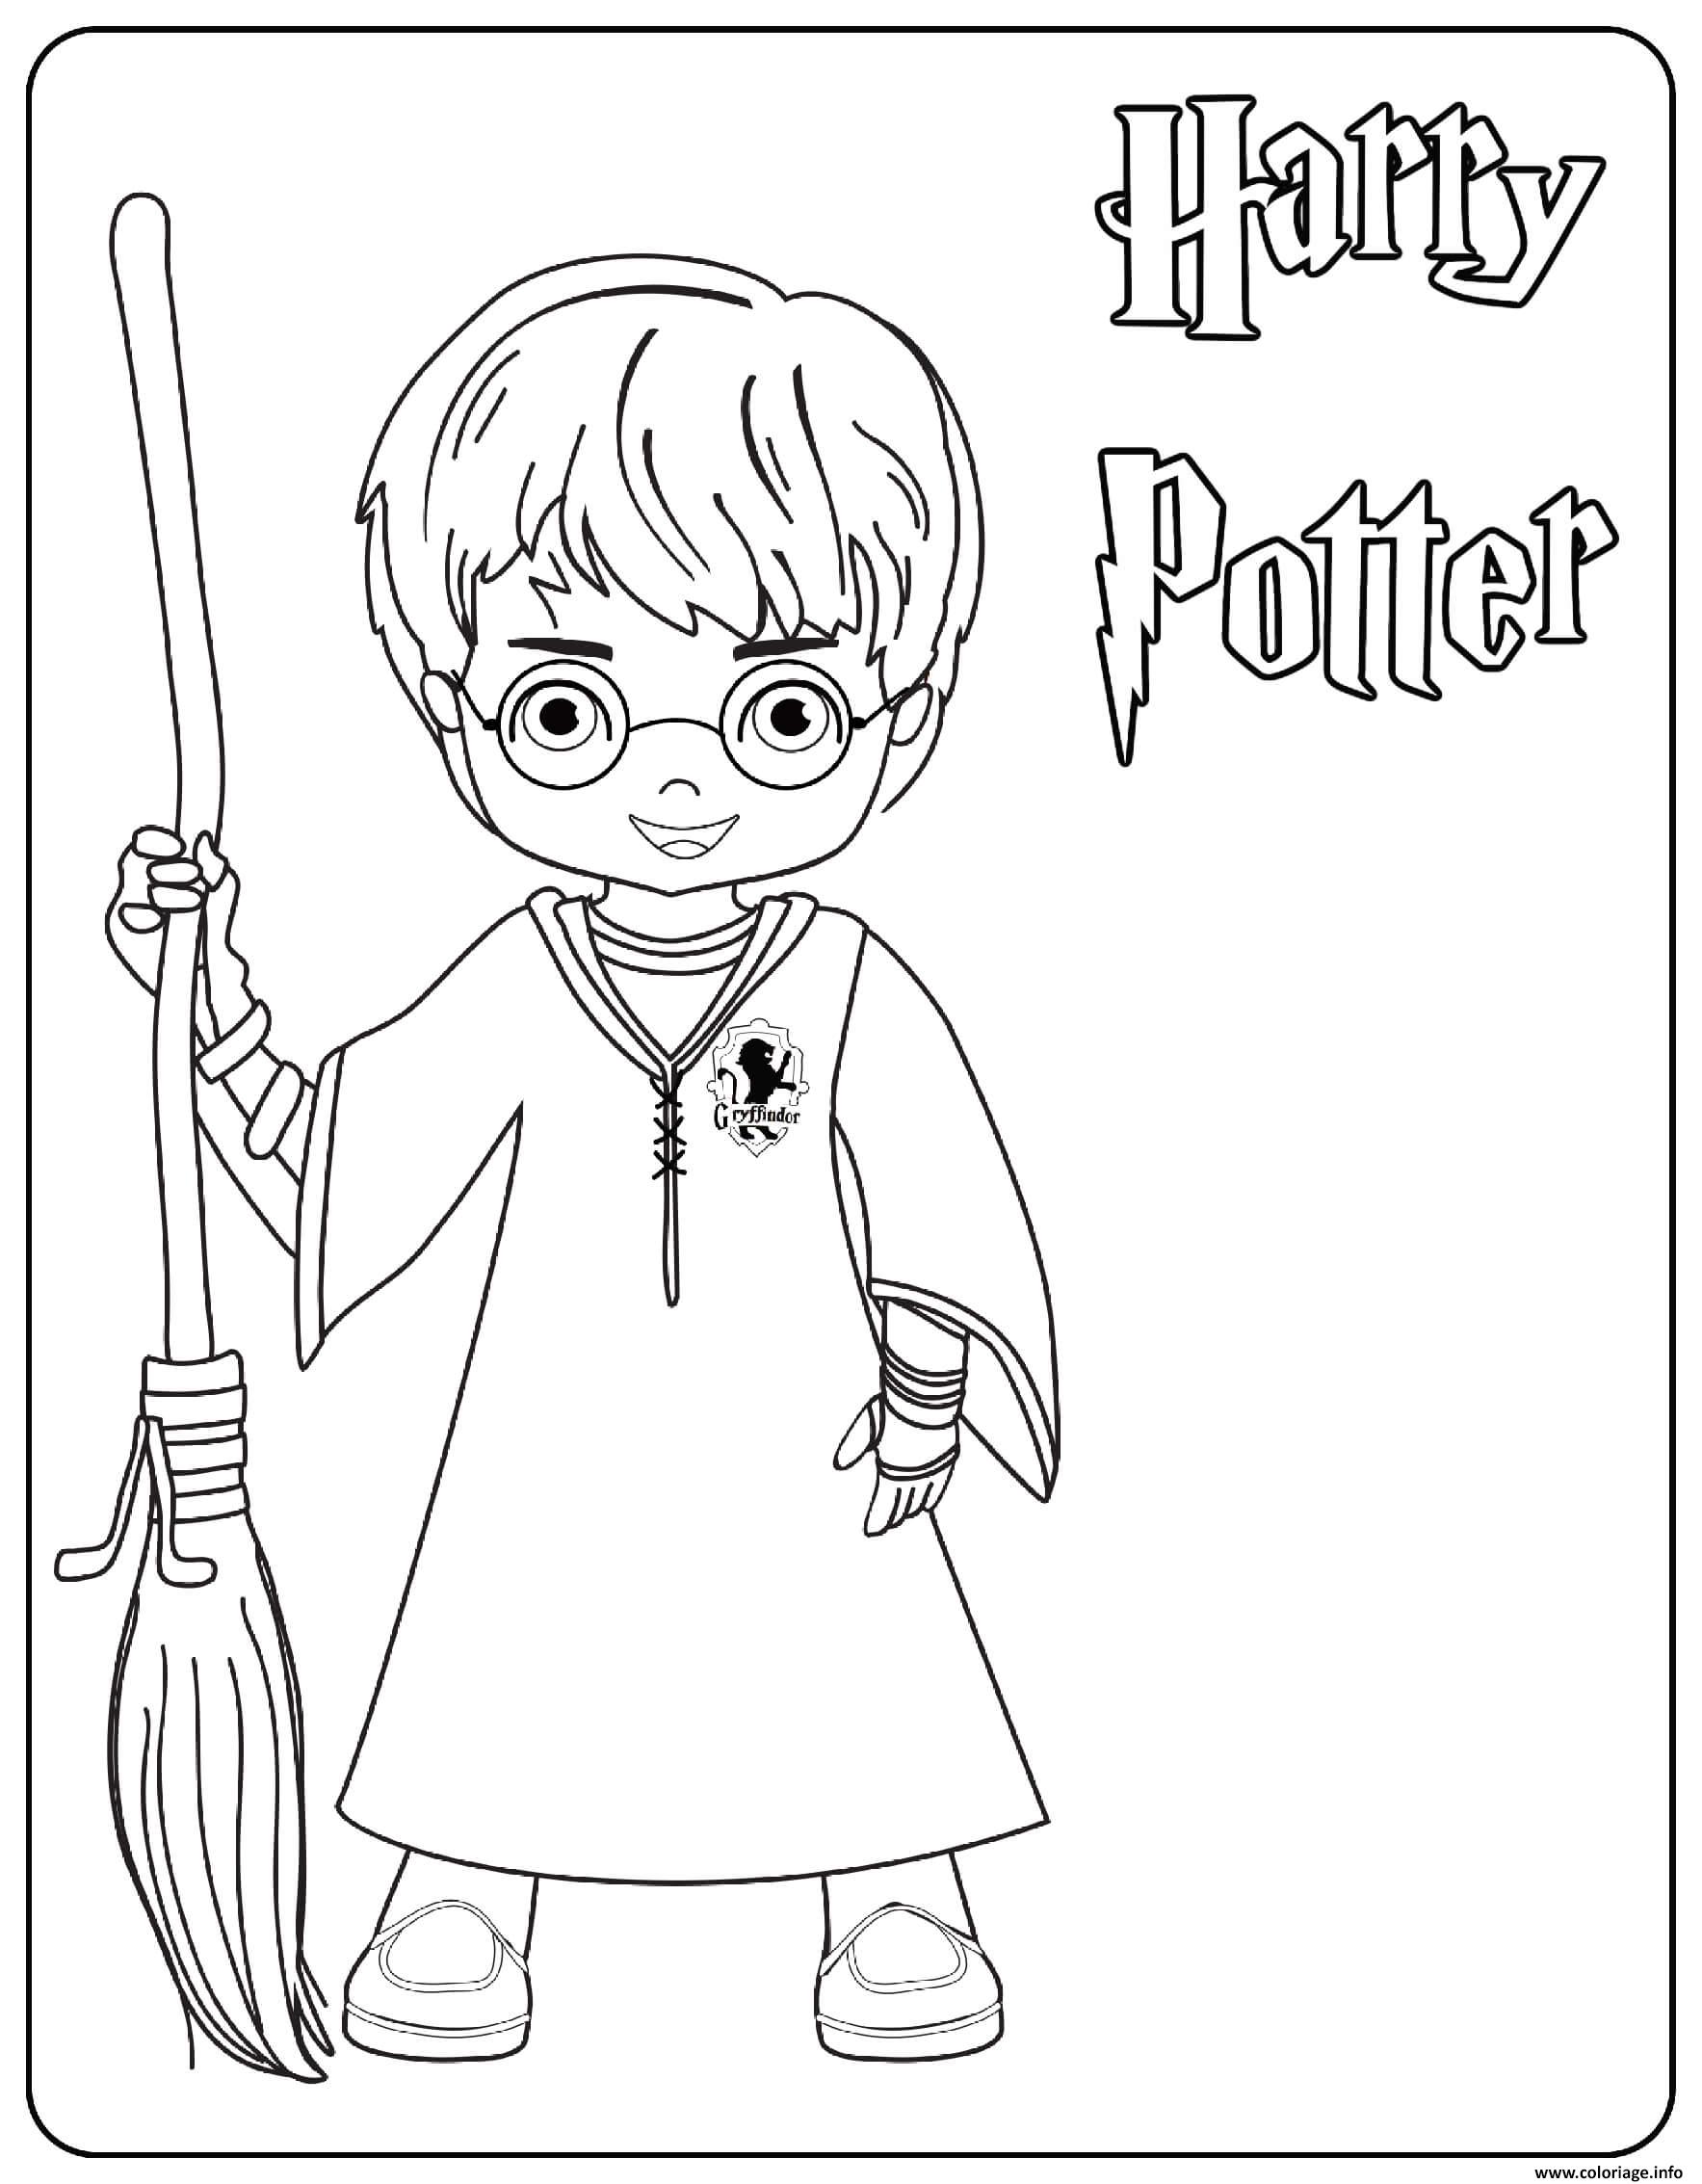 Dessin Harry Potter Coloriage Gratuit à Imprimer